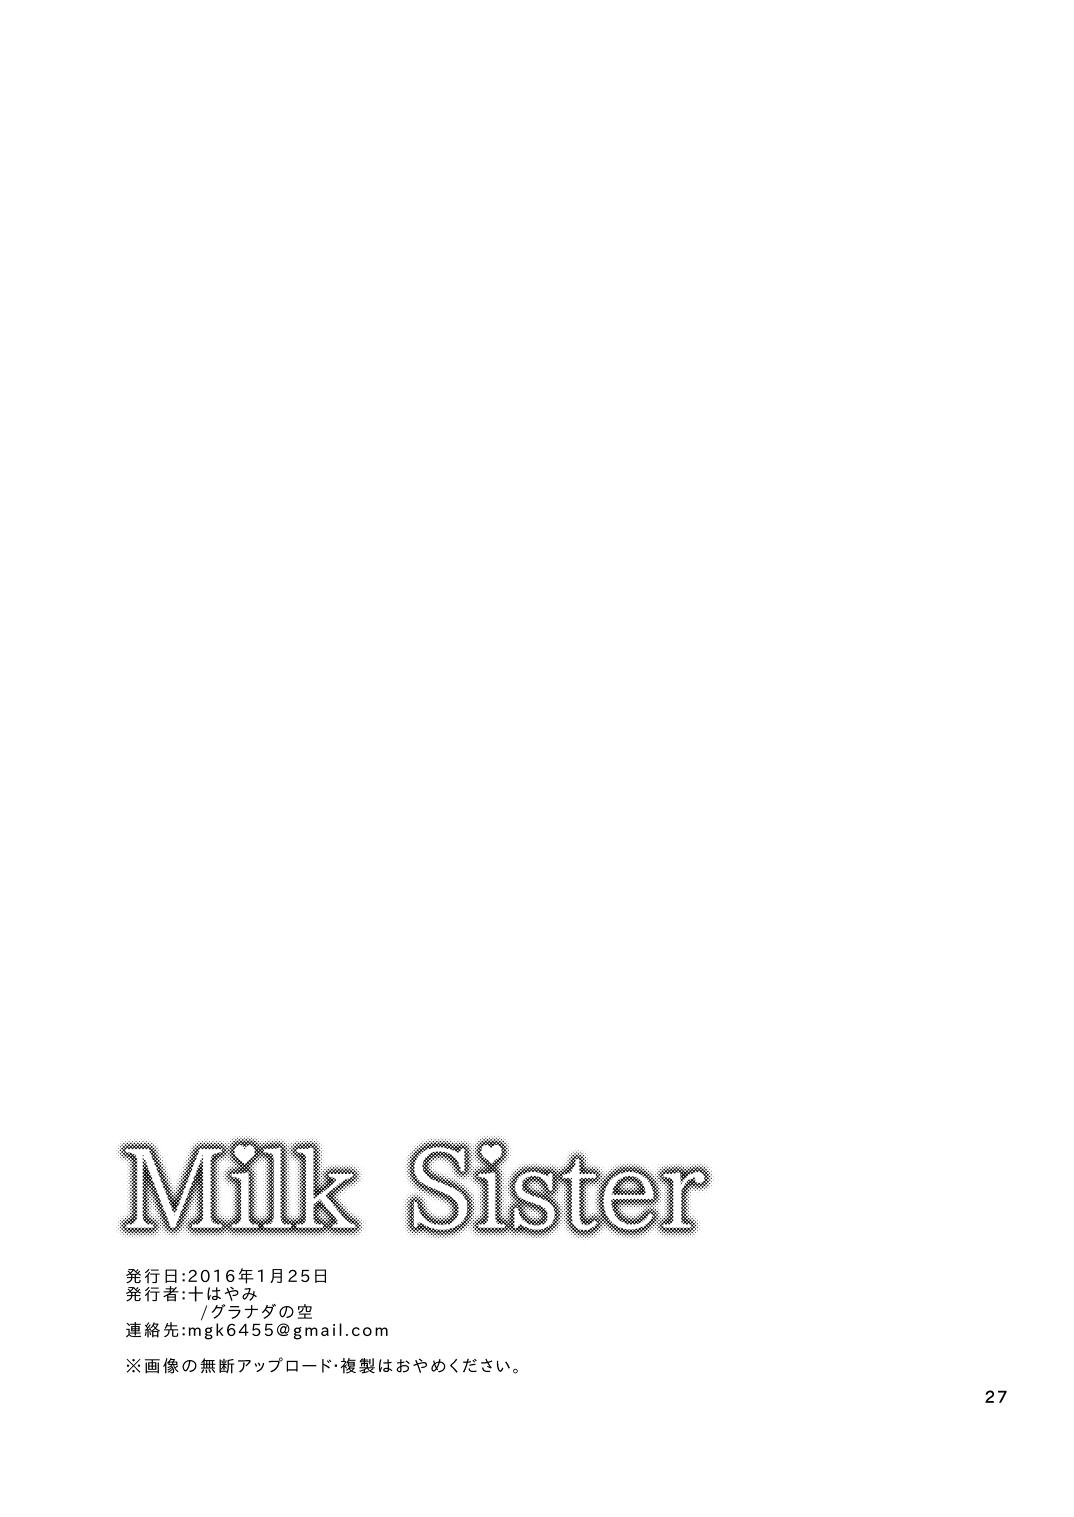 Milk Sister 26